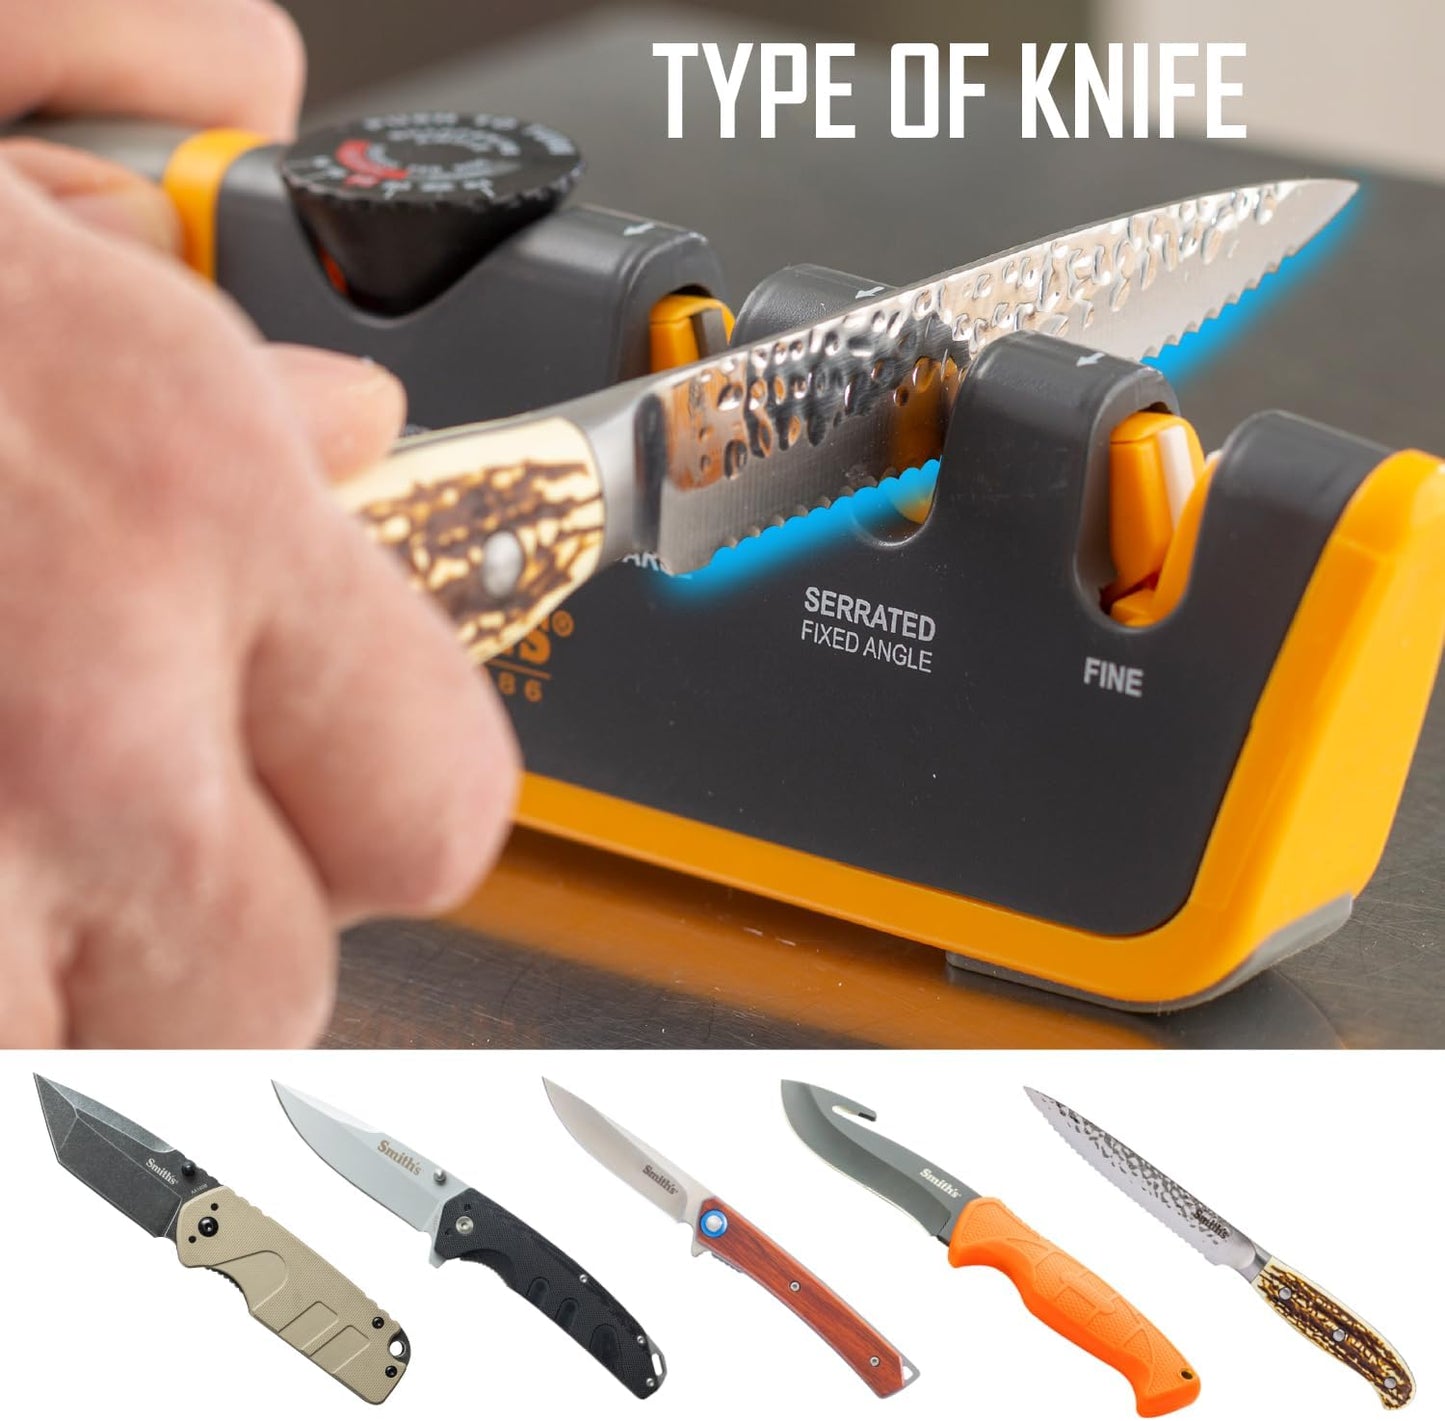 KD Adjustable Angle 2-Stage Knife Sharpener Restores Blades